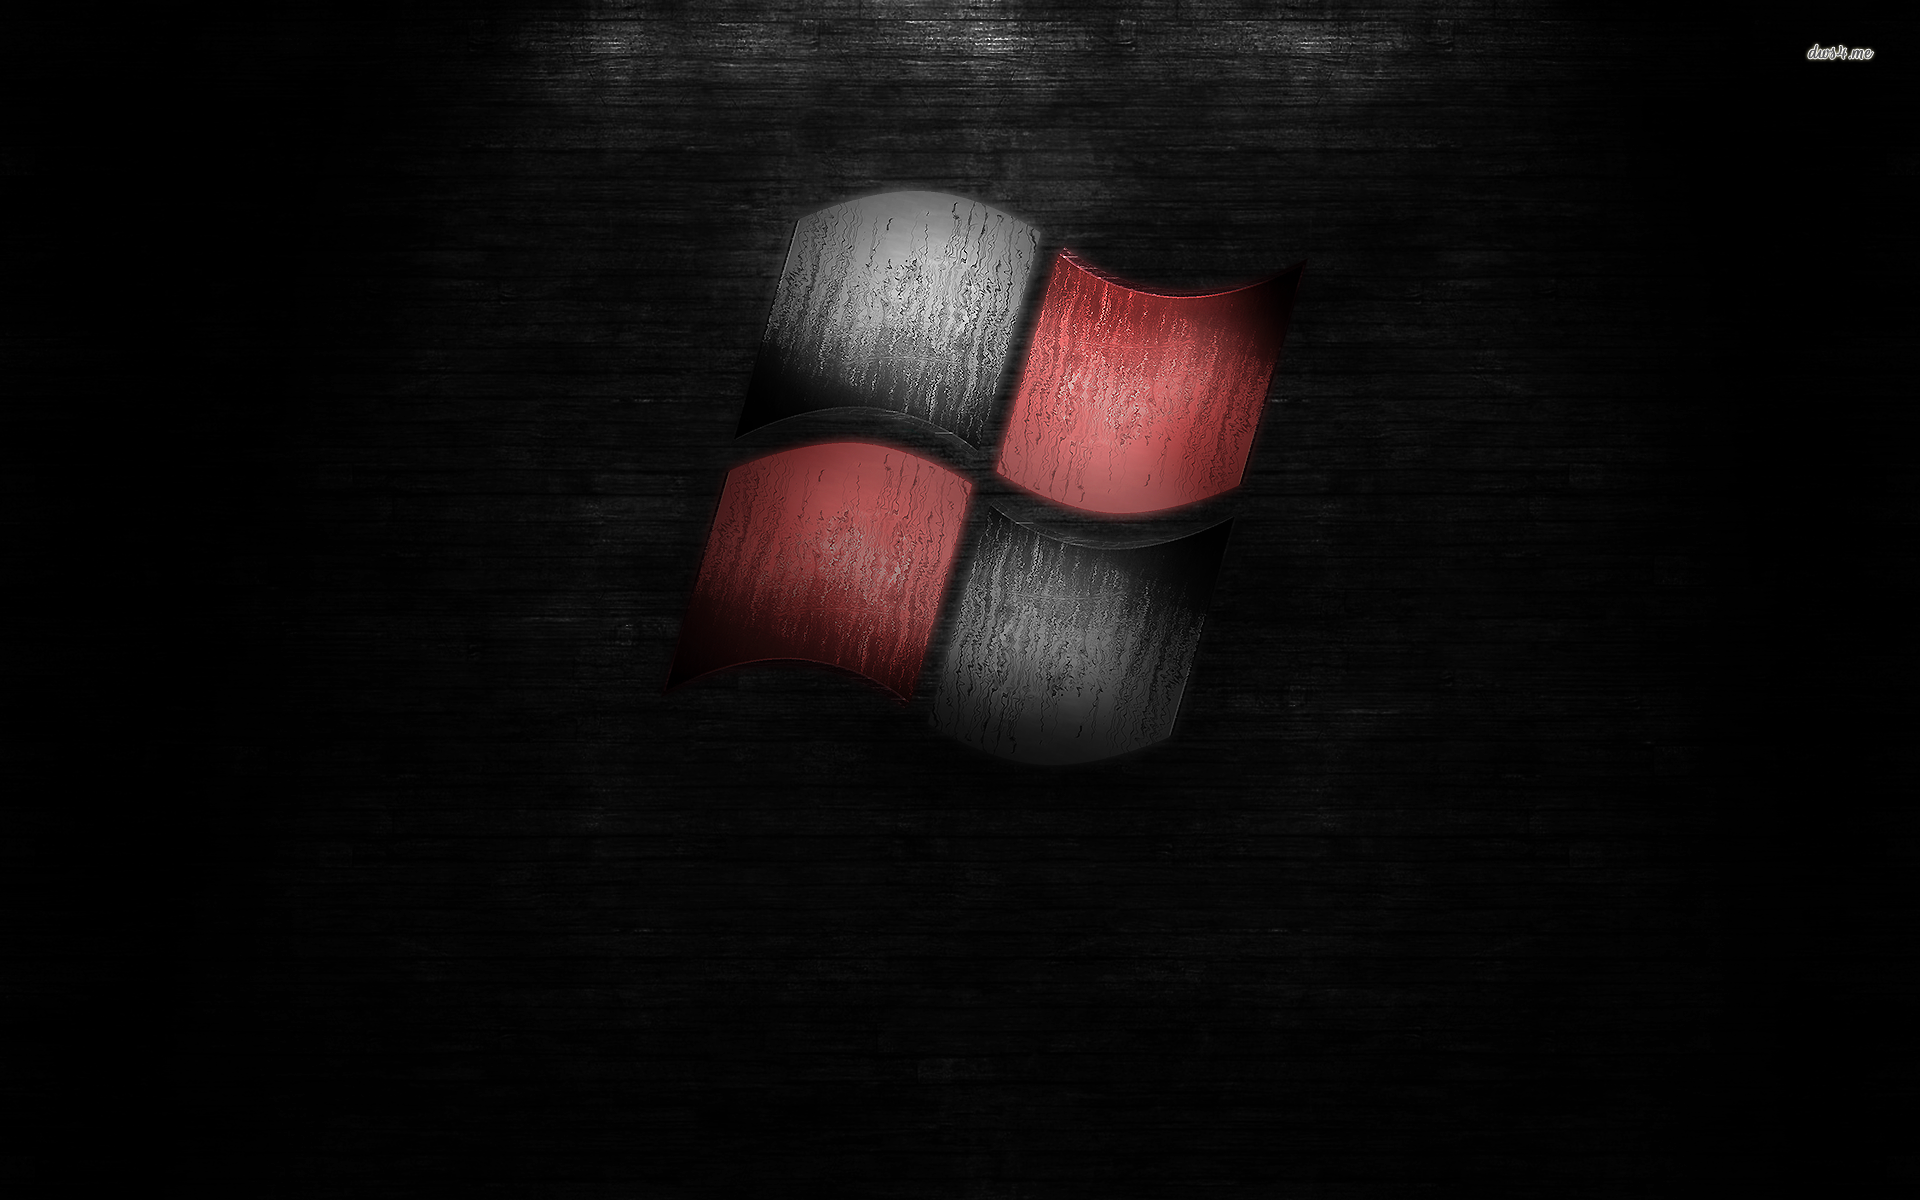 schwarze und rote tapete,rot,lippe,mund,dunkelheit,hand